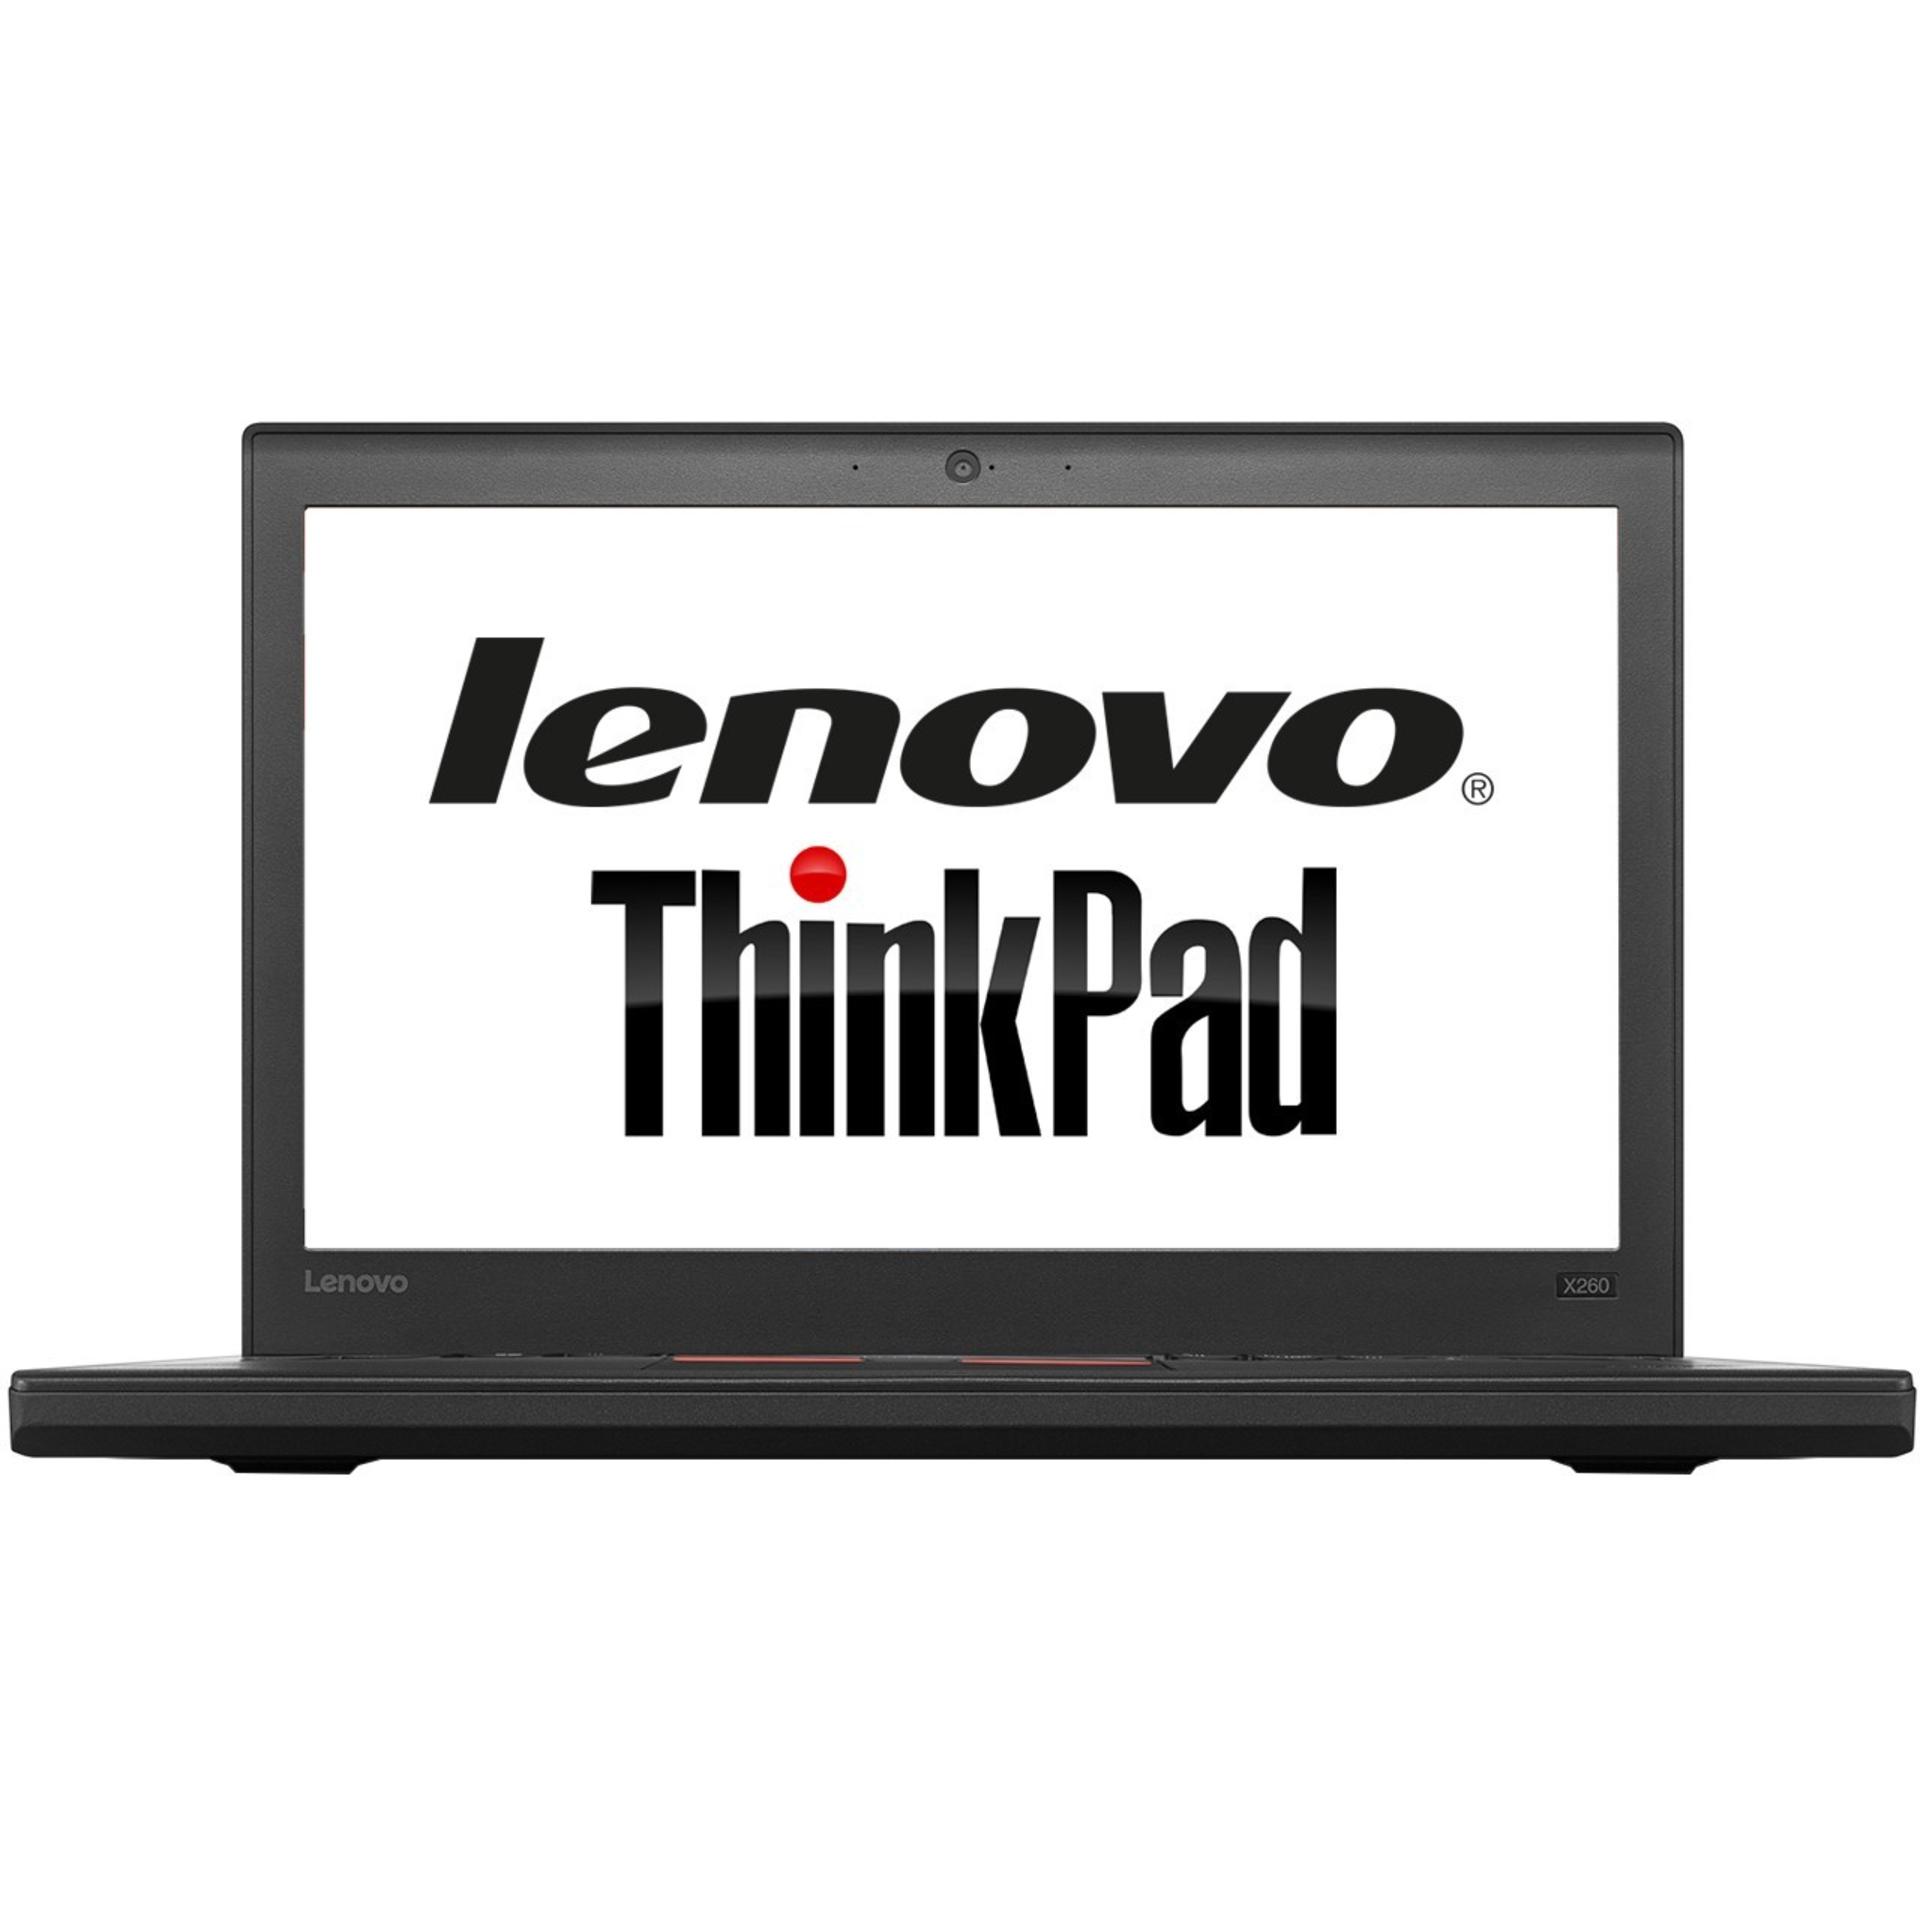 ThinkPad X260 لنوو - Core i5 4GB 500GB-0